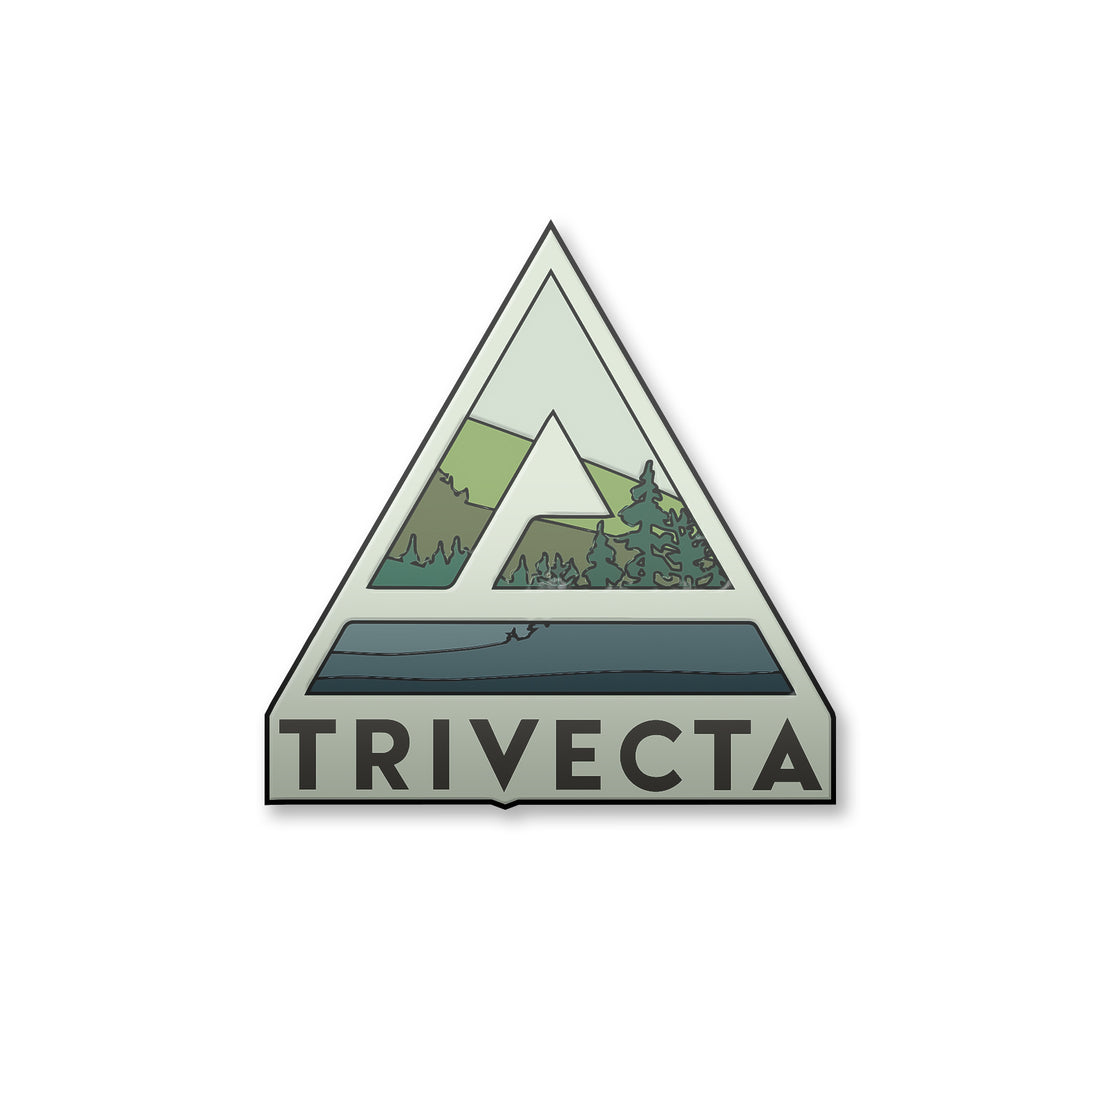 Trivecta - Pin